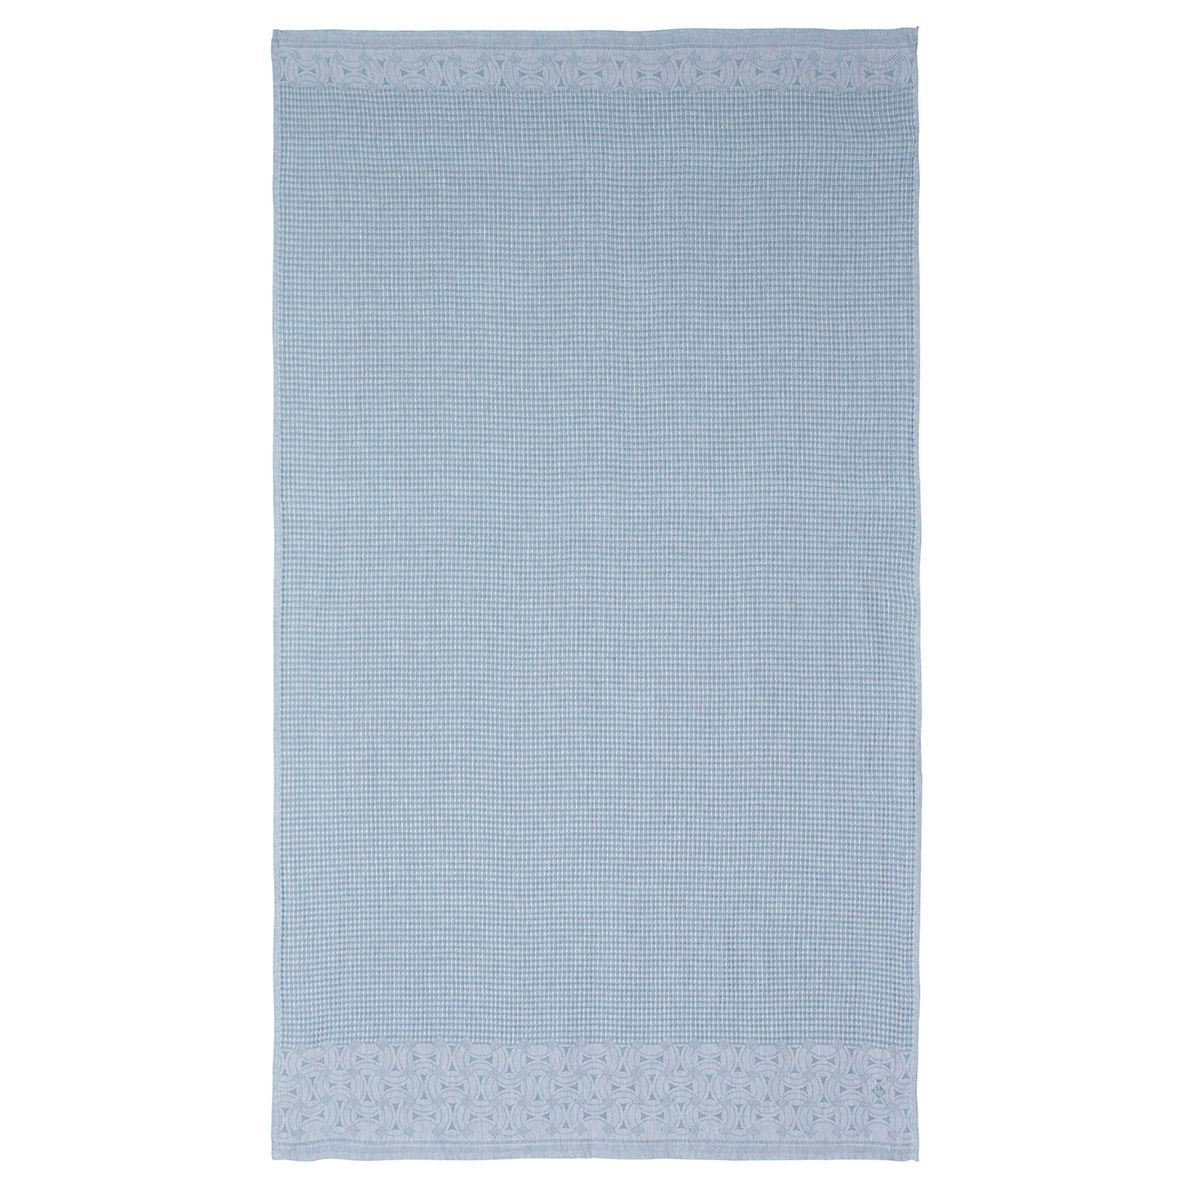 Fig Linens - Lula Blue Ice Linen Bath Towels by Le Jacquard Français 